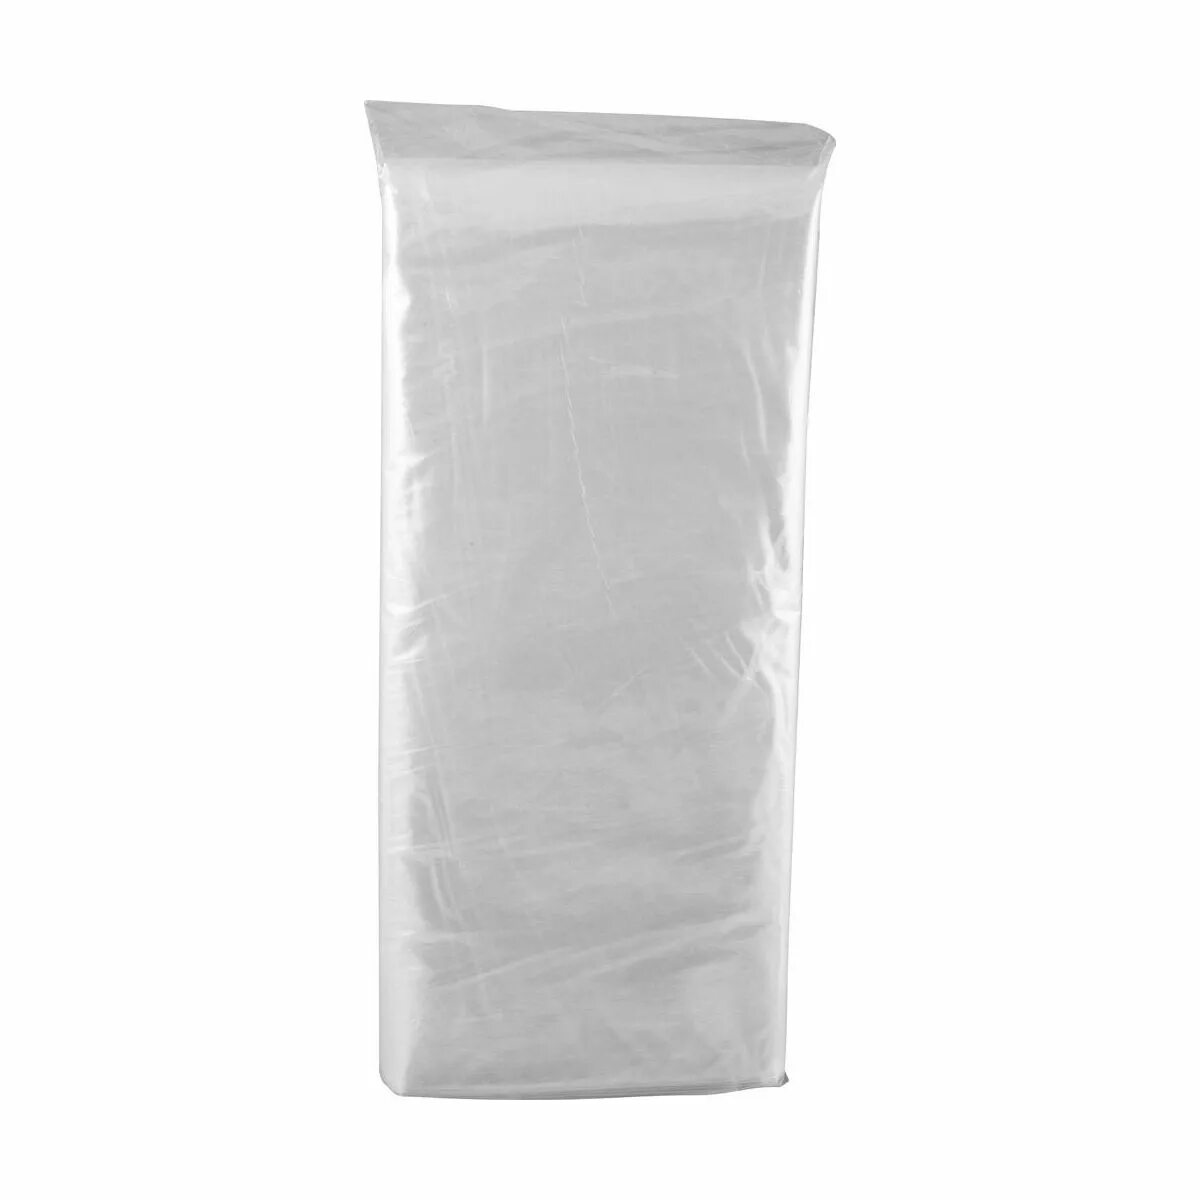 Купить пищевые мешки. Мешок, вкладыш в бочку, 50 литров, 50 × 100 см, 80 мкм. Мешок для засолки полиэтиленовый. Мешок полиэтиленовый плотный. Мешки пищевые полиэтиленовые для засолки.